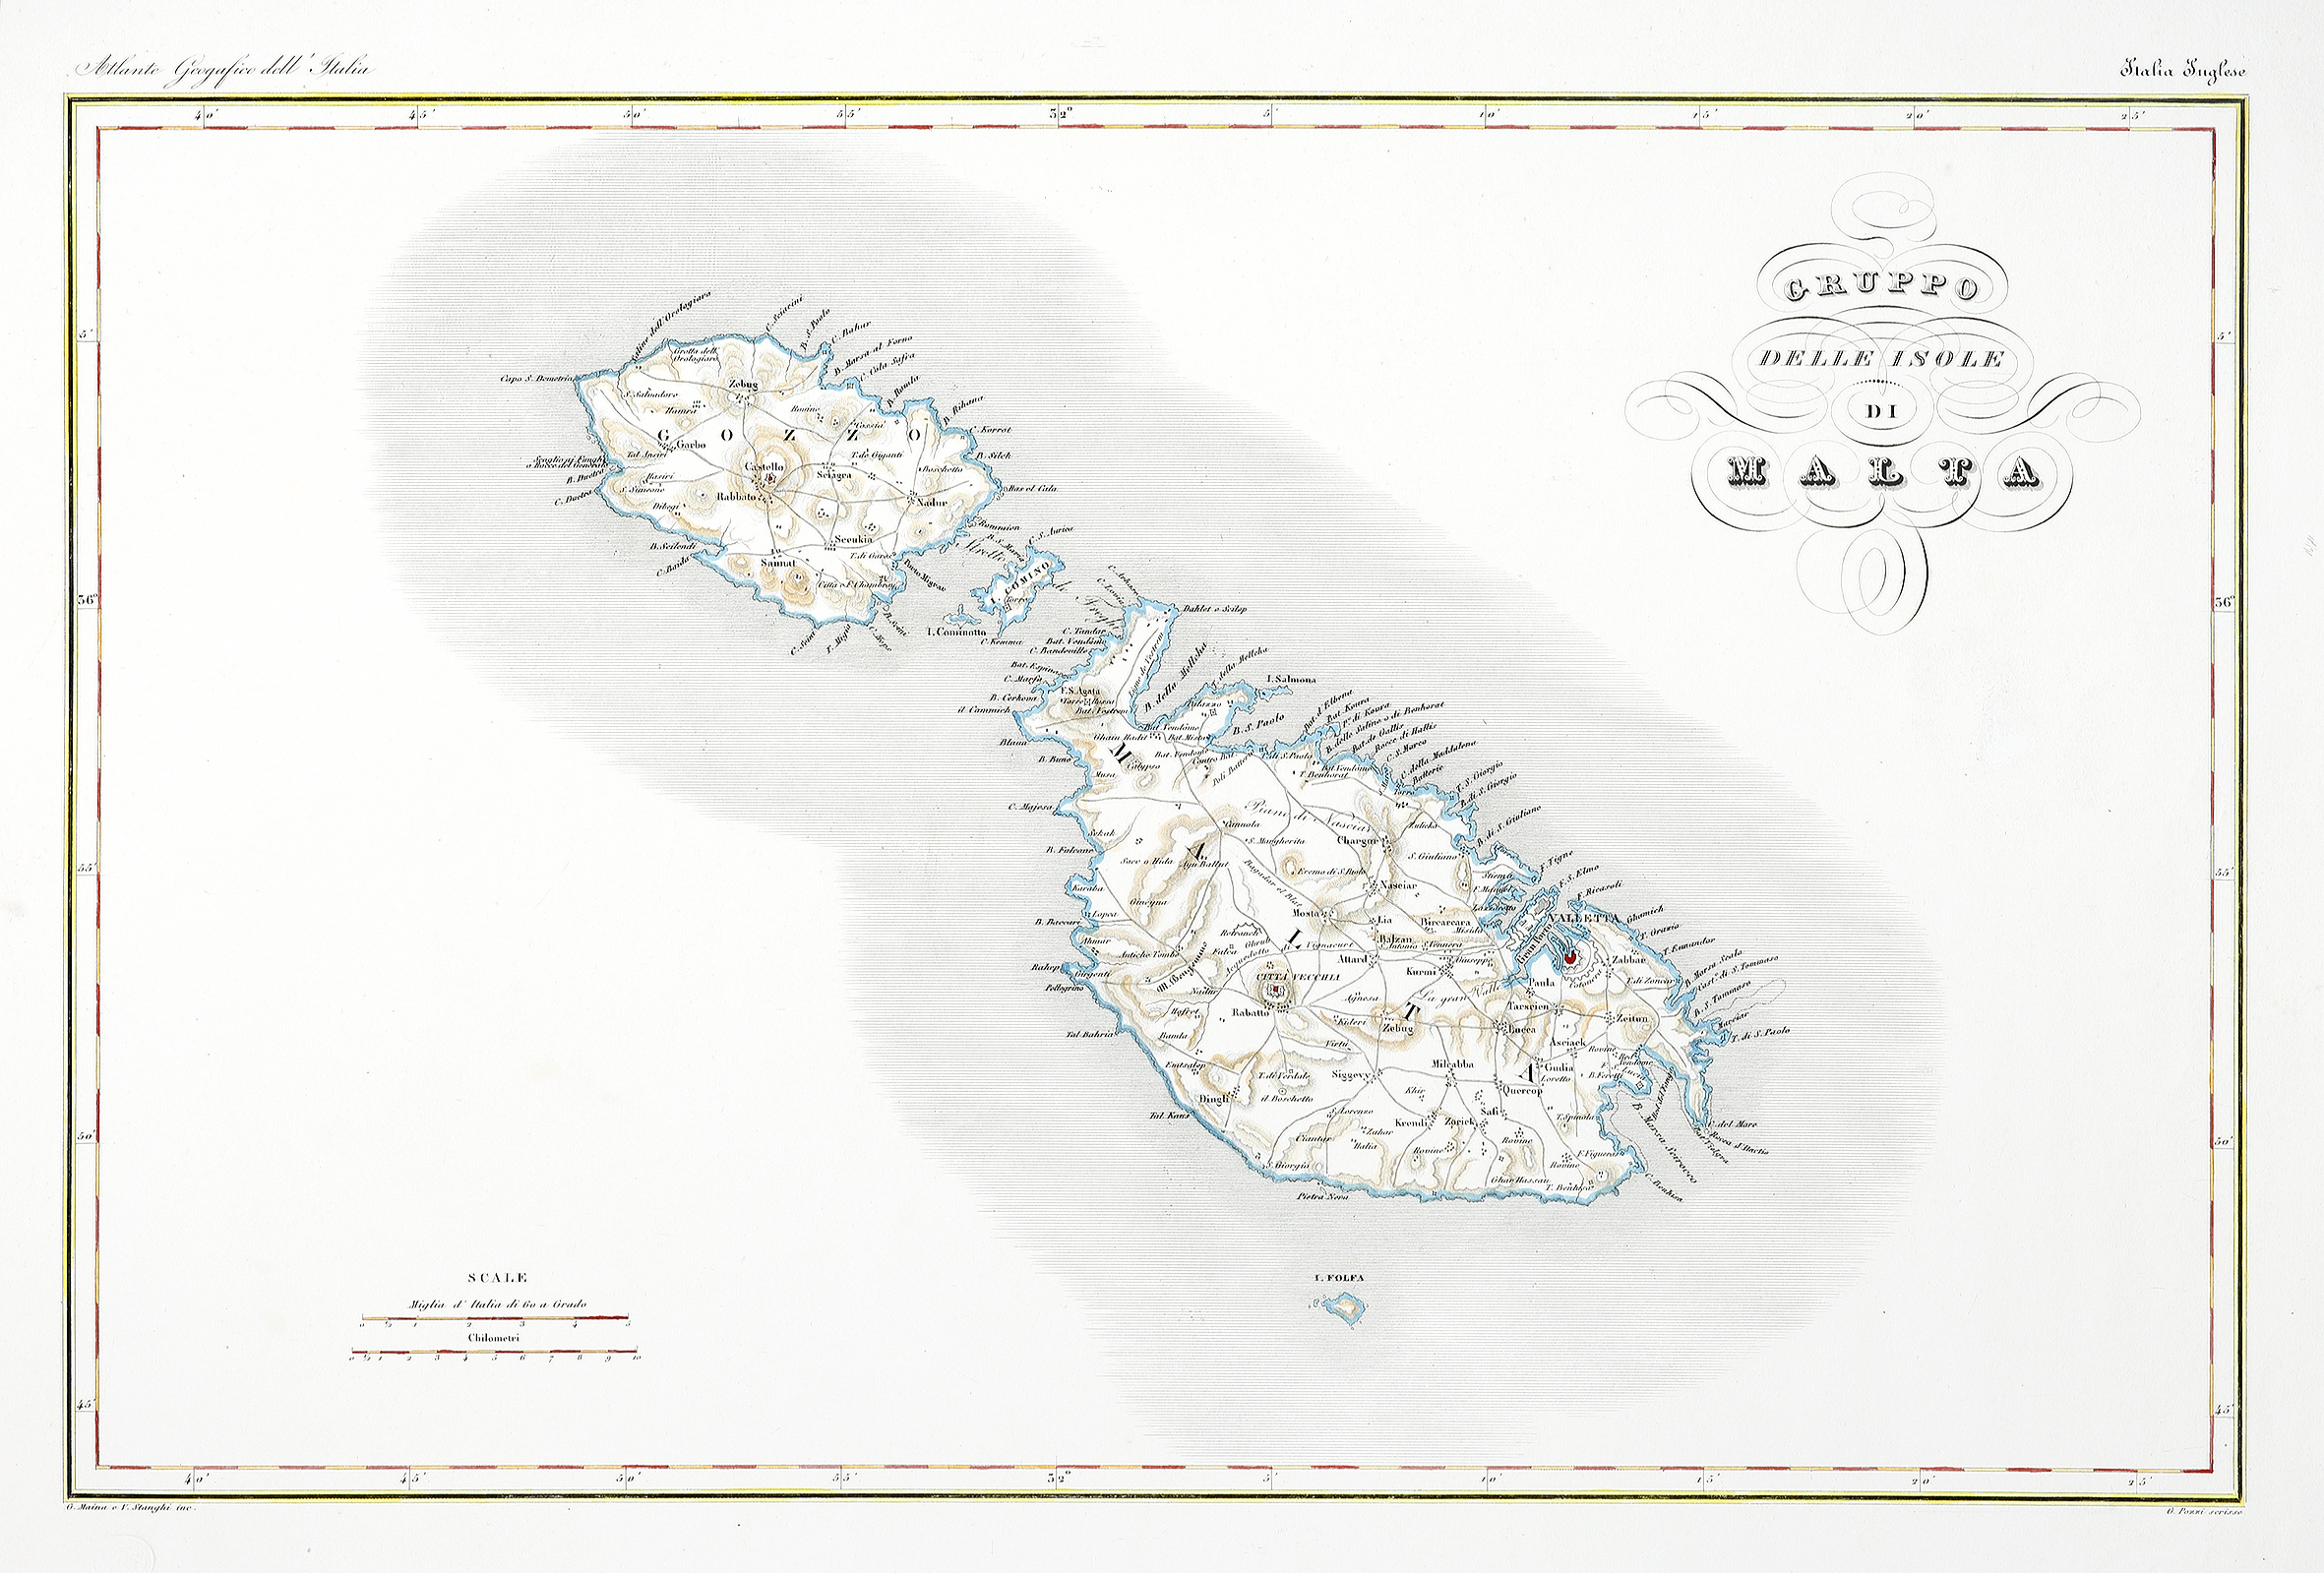 Gruppo Delle Isole di Malta. - Antique Map from 1860